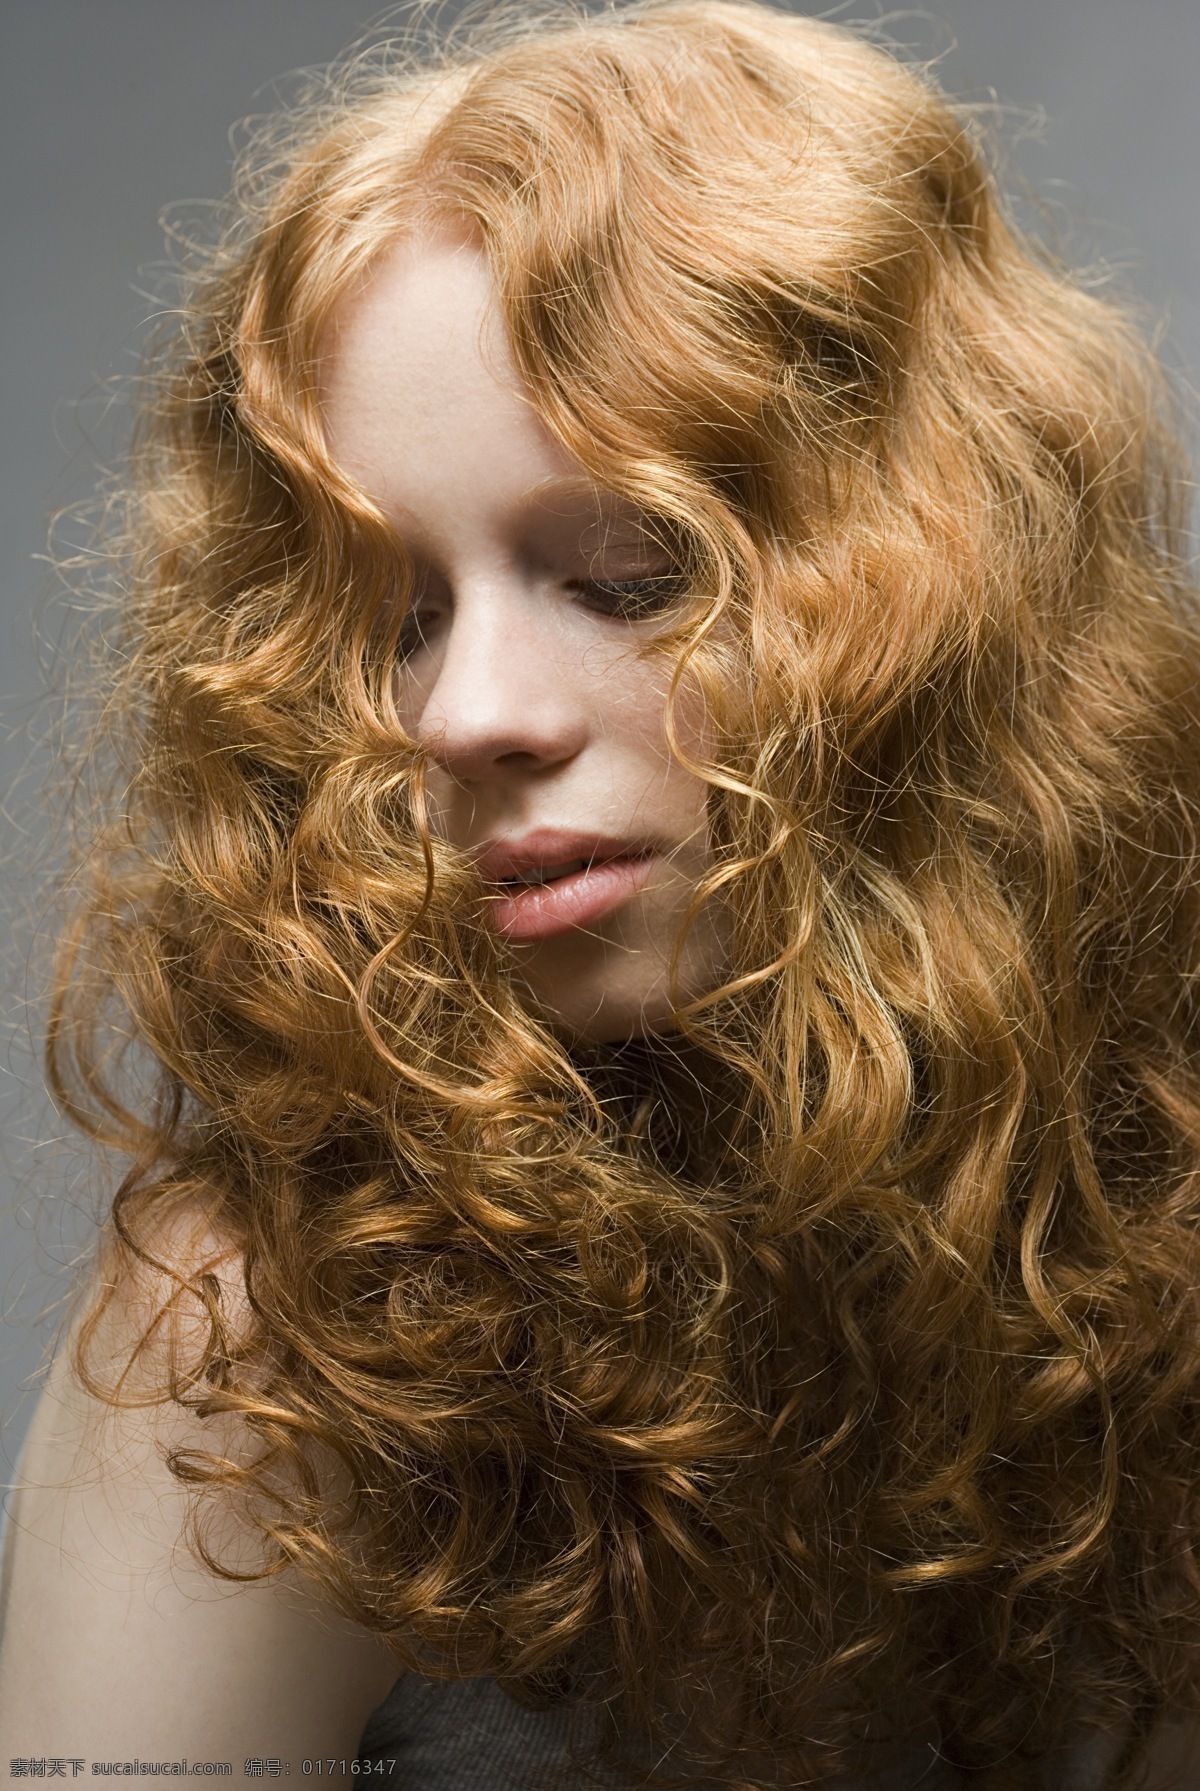 黄发 美女 发型设计 人物 女人 外国女人 长发 卷发 烫发 染发 做头发 皮肤 光滑嫩白 高清图片 美女图片 人物图片